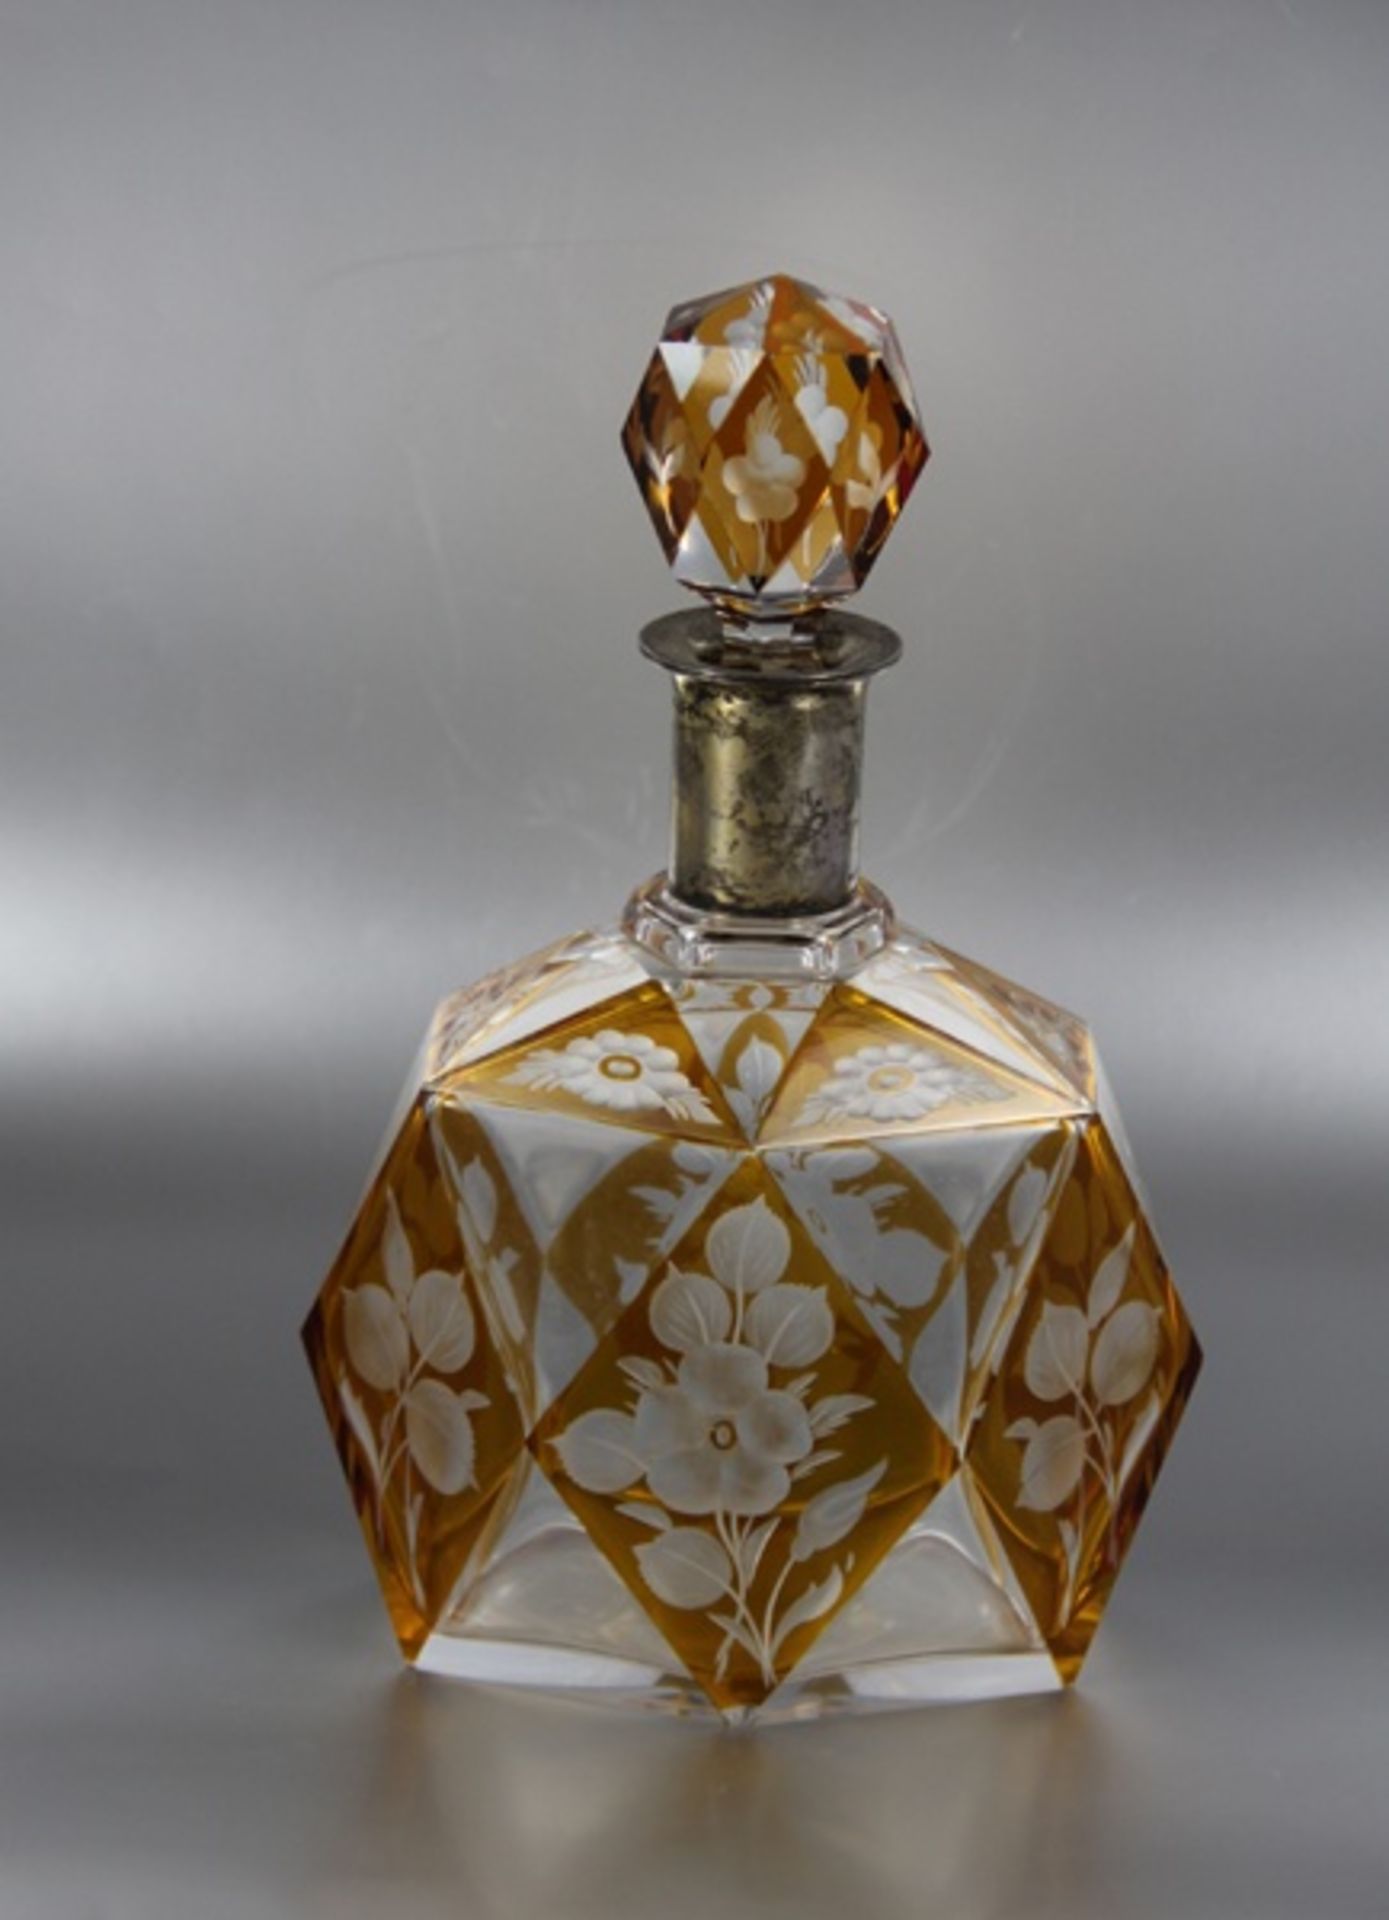 Glaskaraffeum 1900, wohl Böhmen, kantige Form mit geschnittenem Blütendekor, teils braunfarbig